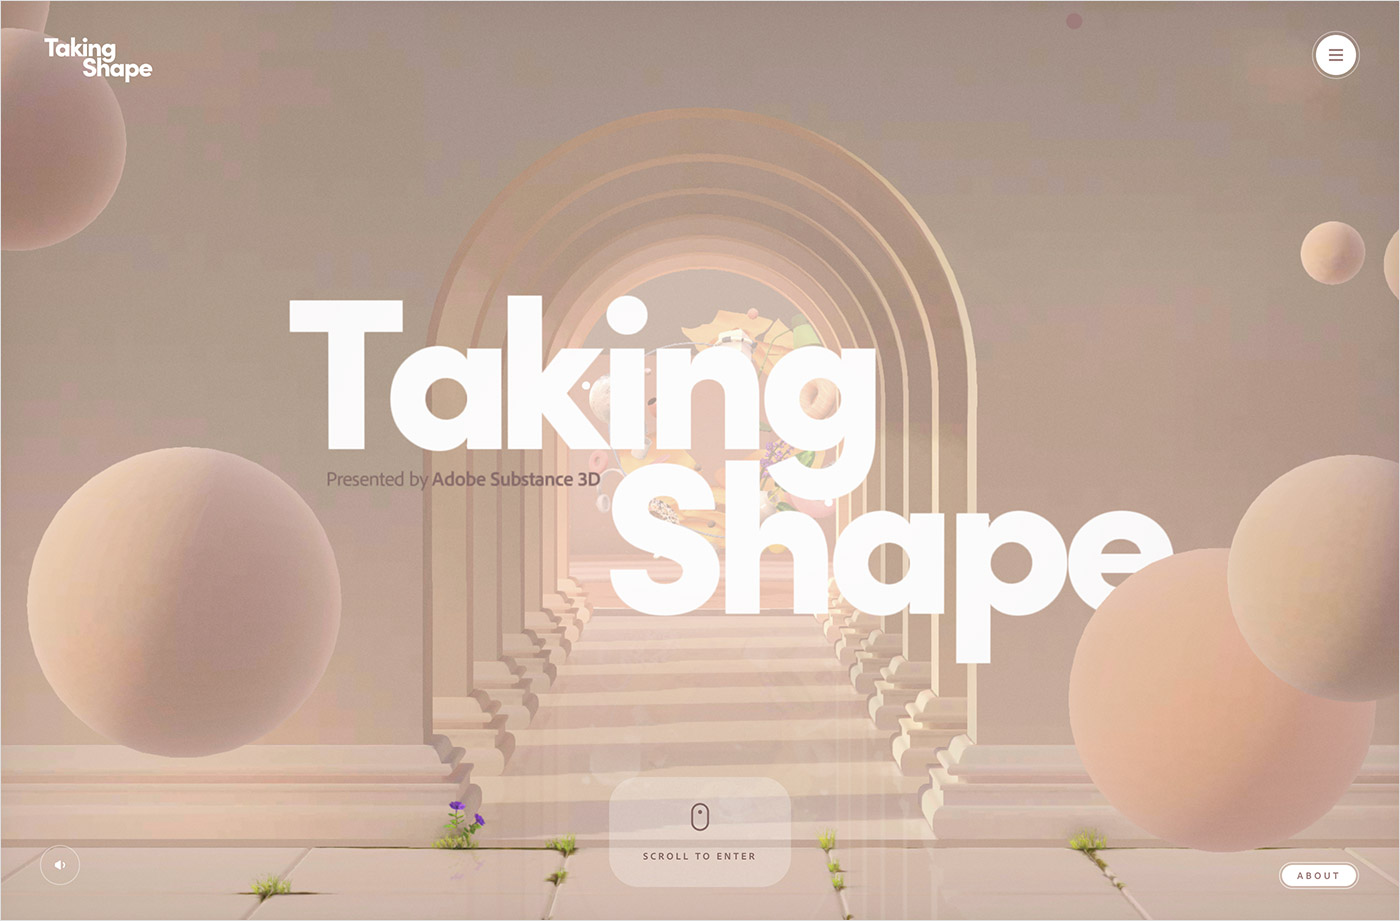 Taking Shape | Presented by Adobe Substance 3Dウェブサイトの画面キャプチャ画像